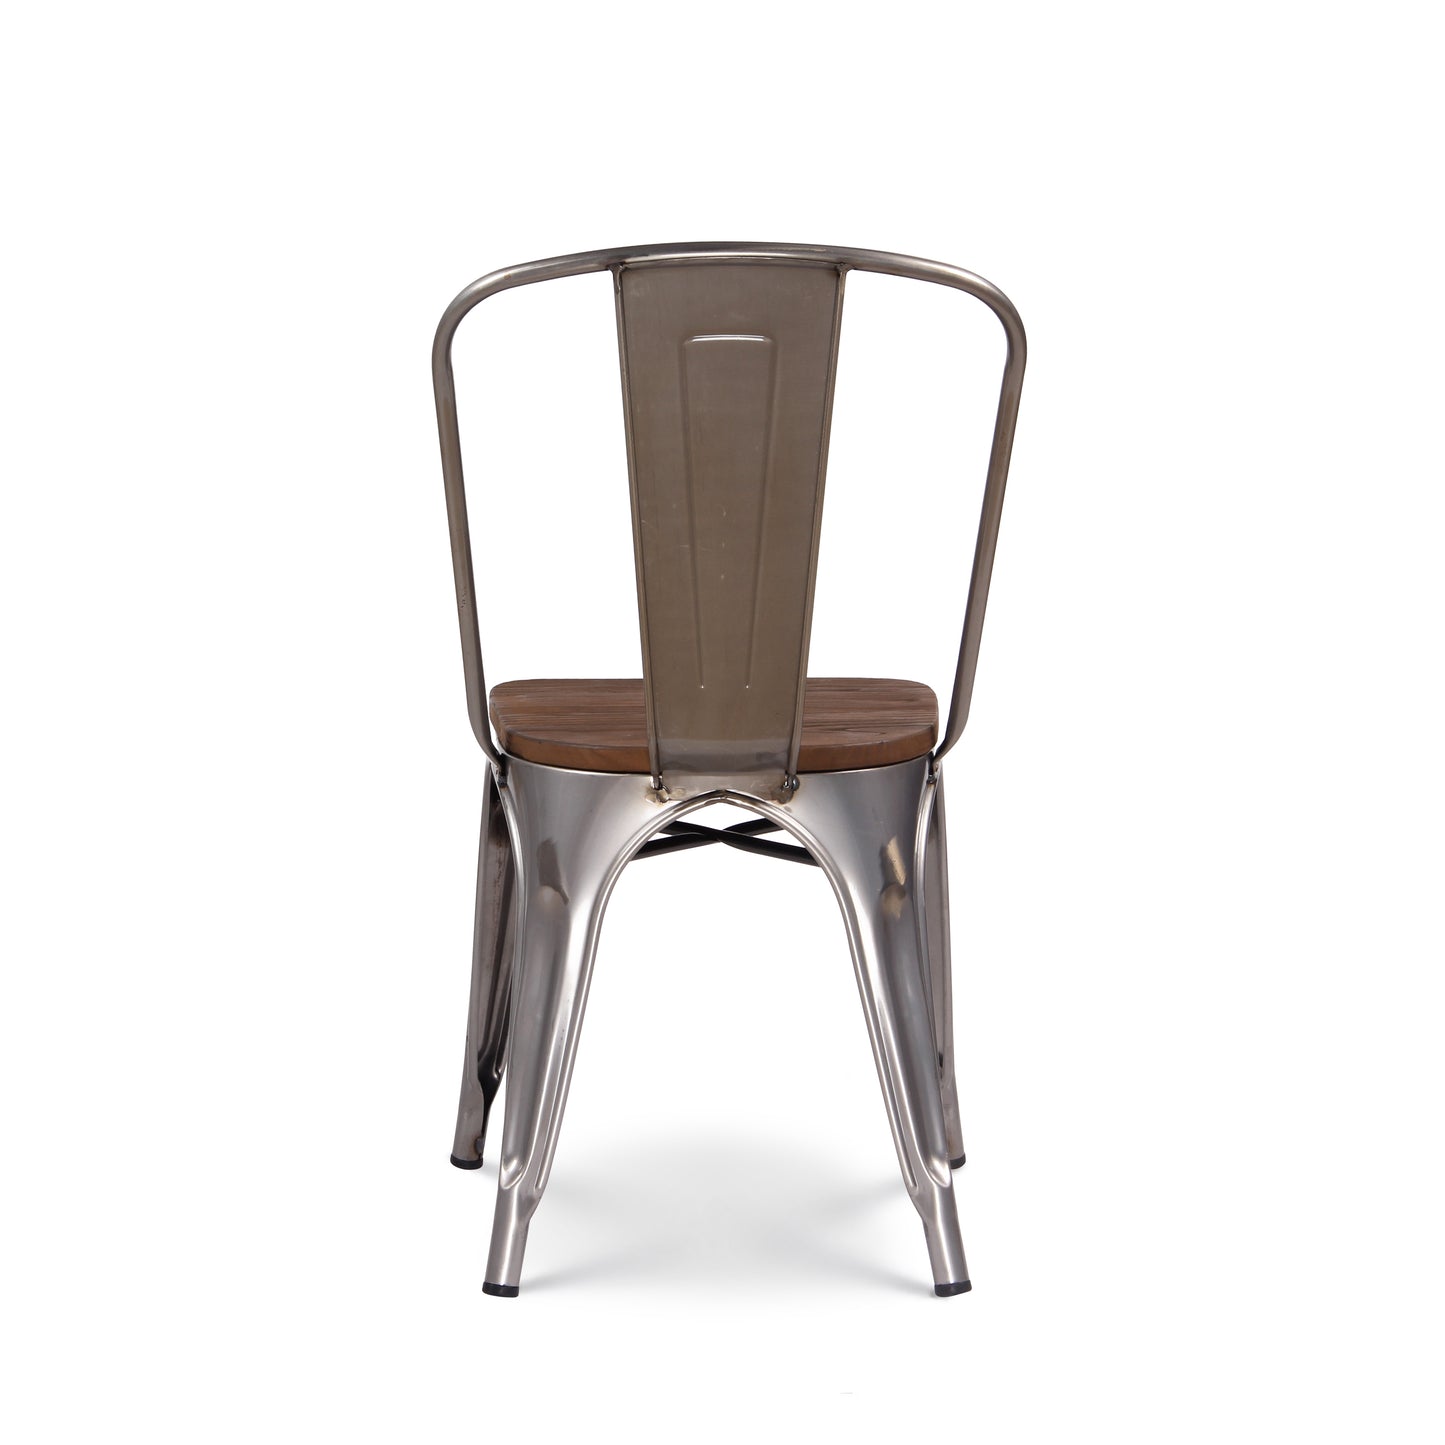 Chaise en métal brut avec assise en bois massif foncé - Aspect galvanisé